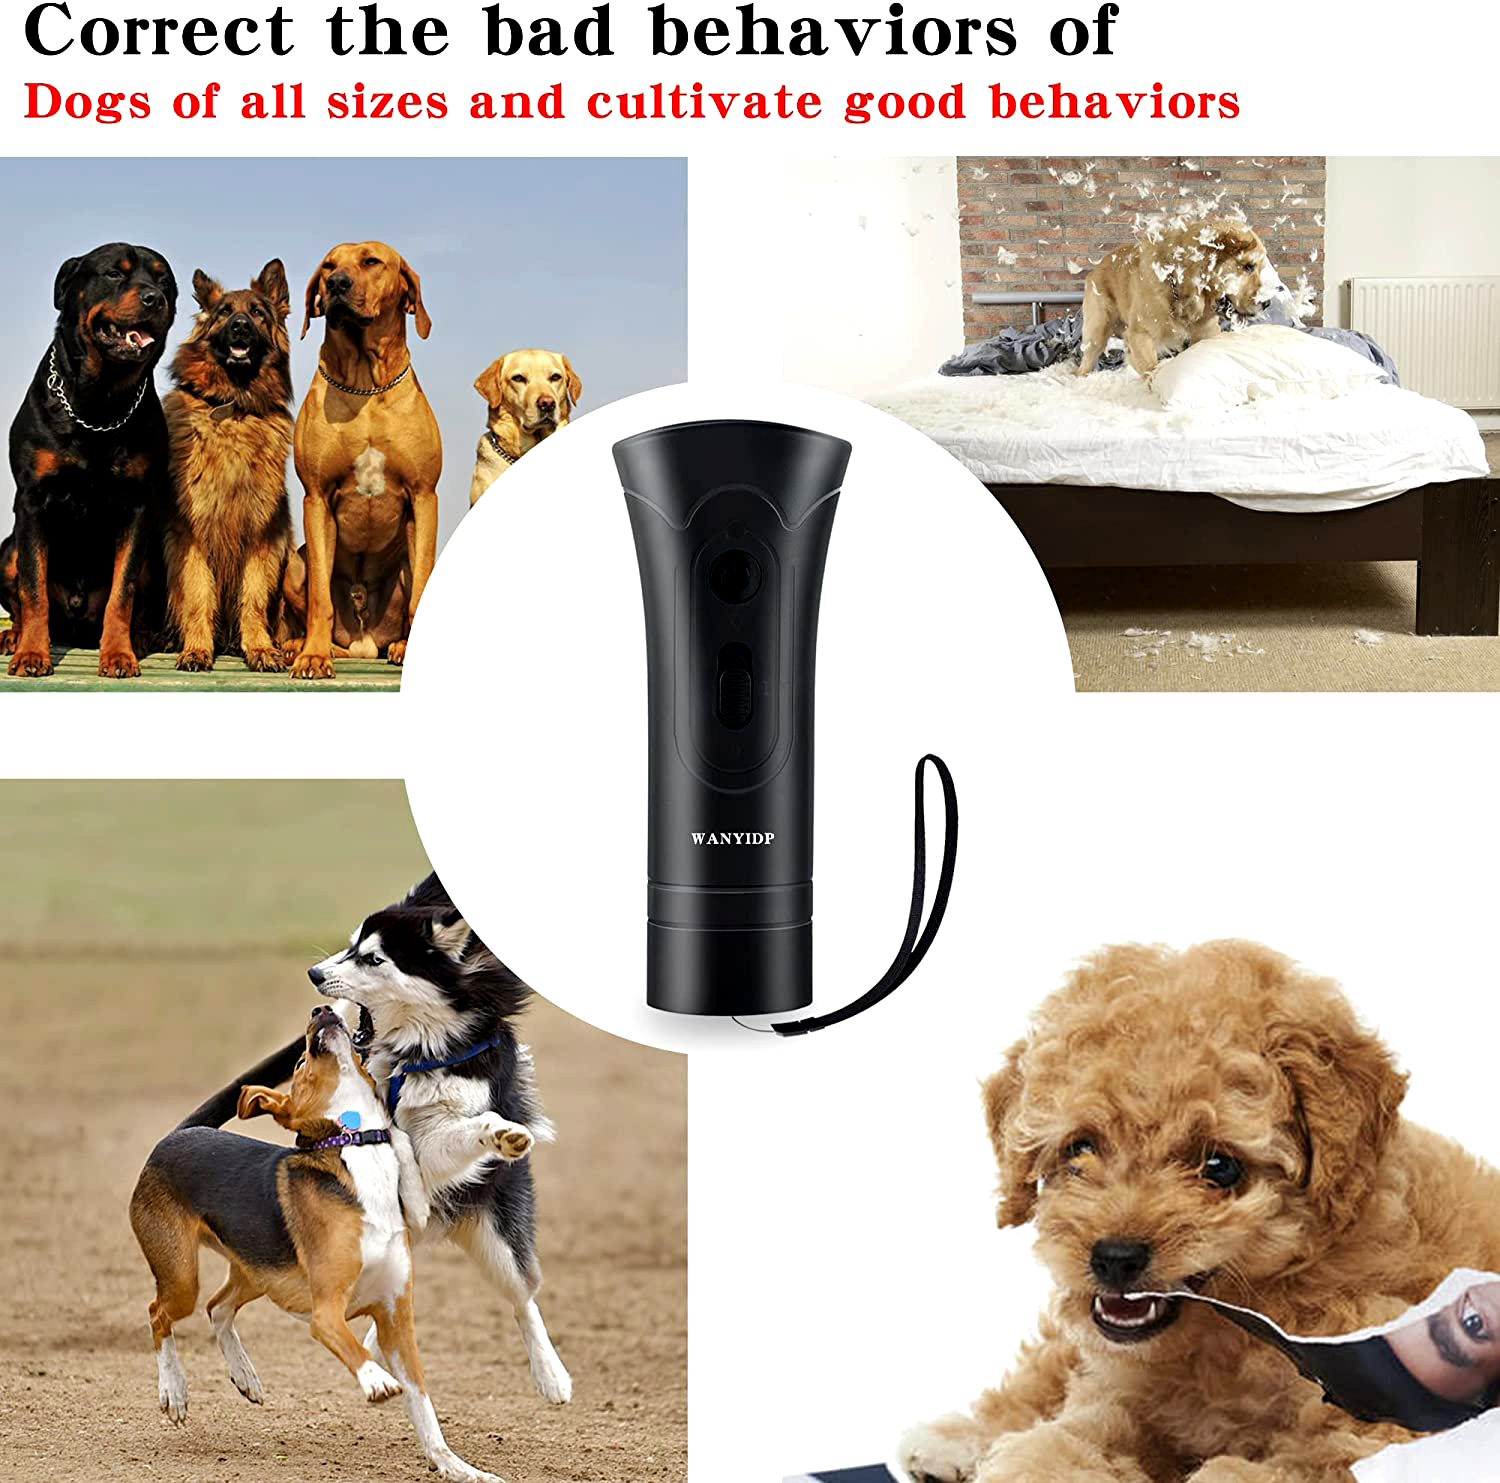 دستگاه ضد پارس دارای برد کنترلی 17 فوتی است و دستگاه پارس سگ ما دستی است، بنابراین می توانید از آن برای آموزش سگ خود در هر مکانی استفاده کنید: در خانه، پارک، در ماشین خود.